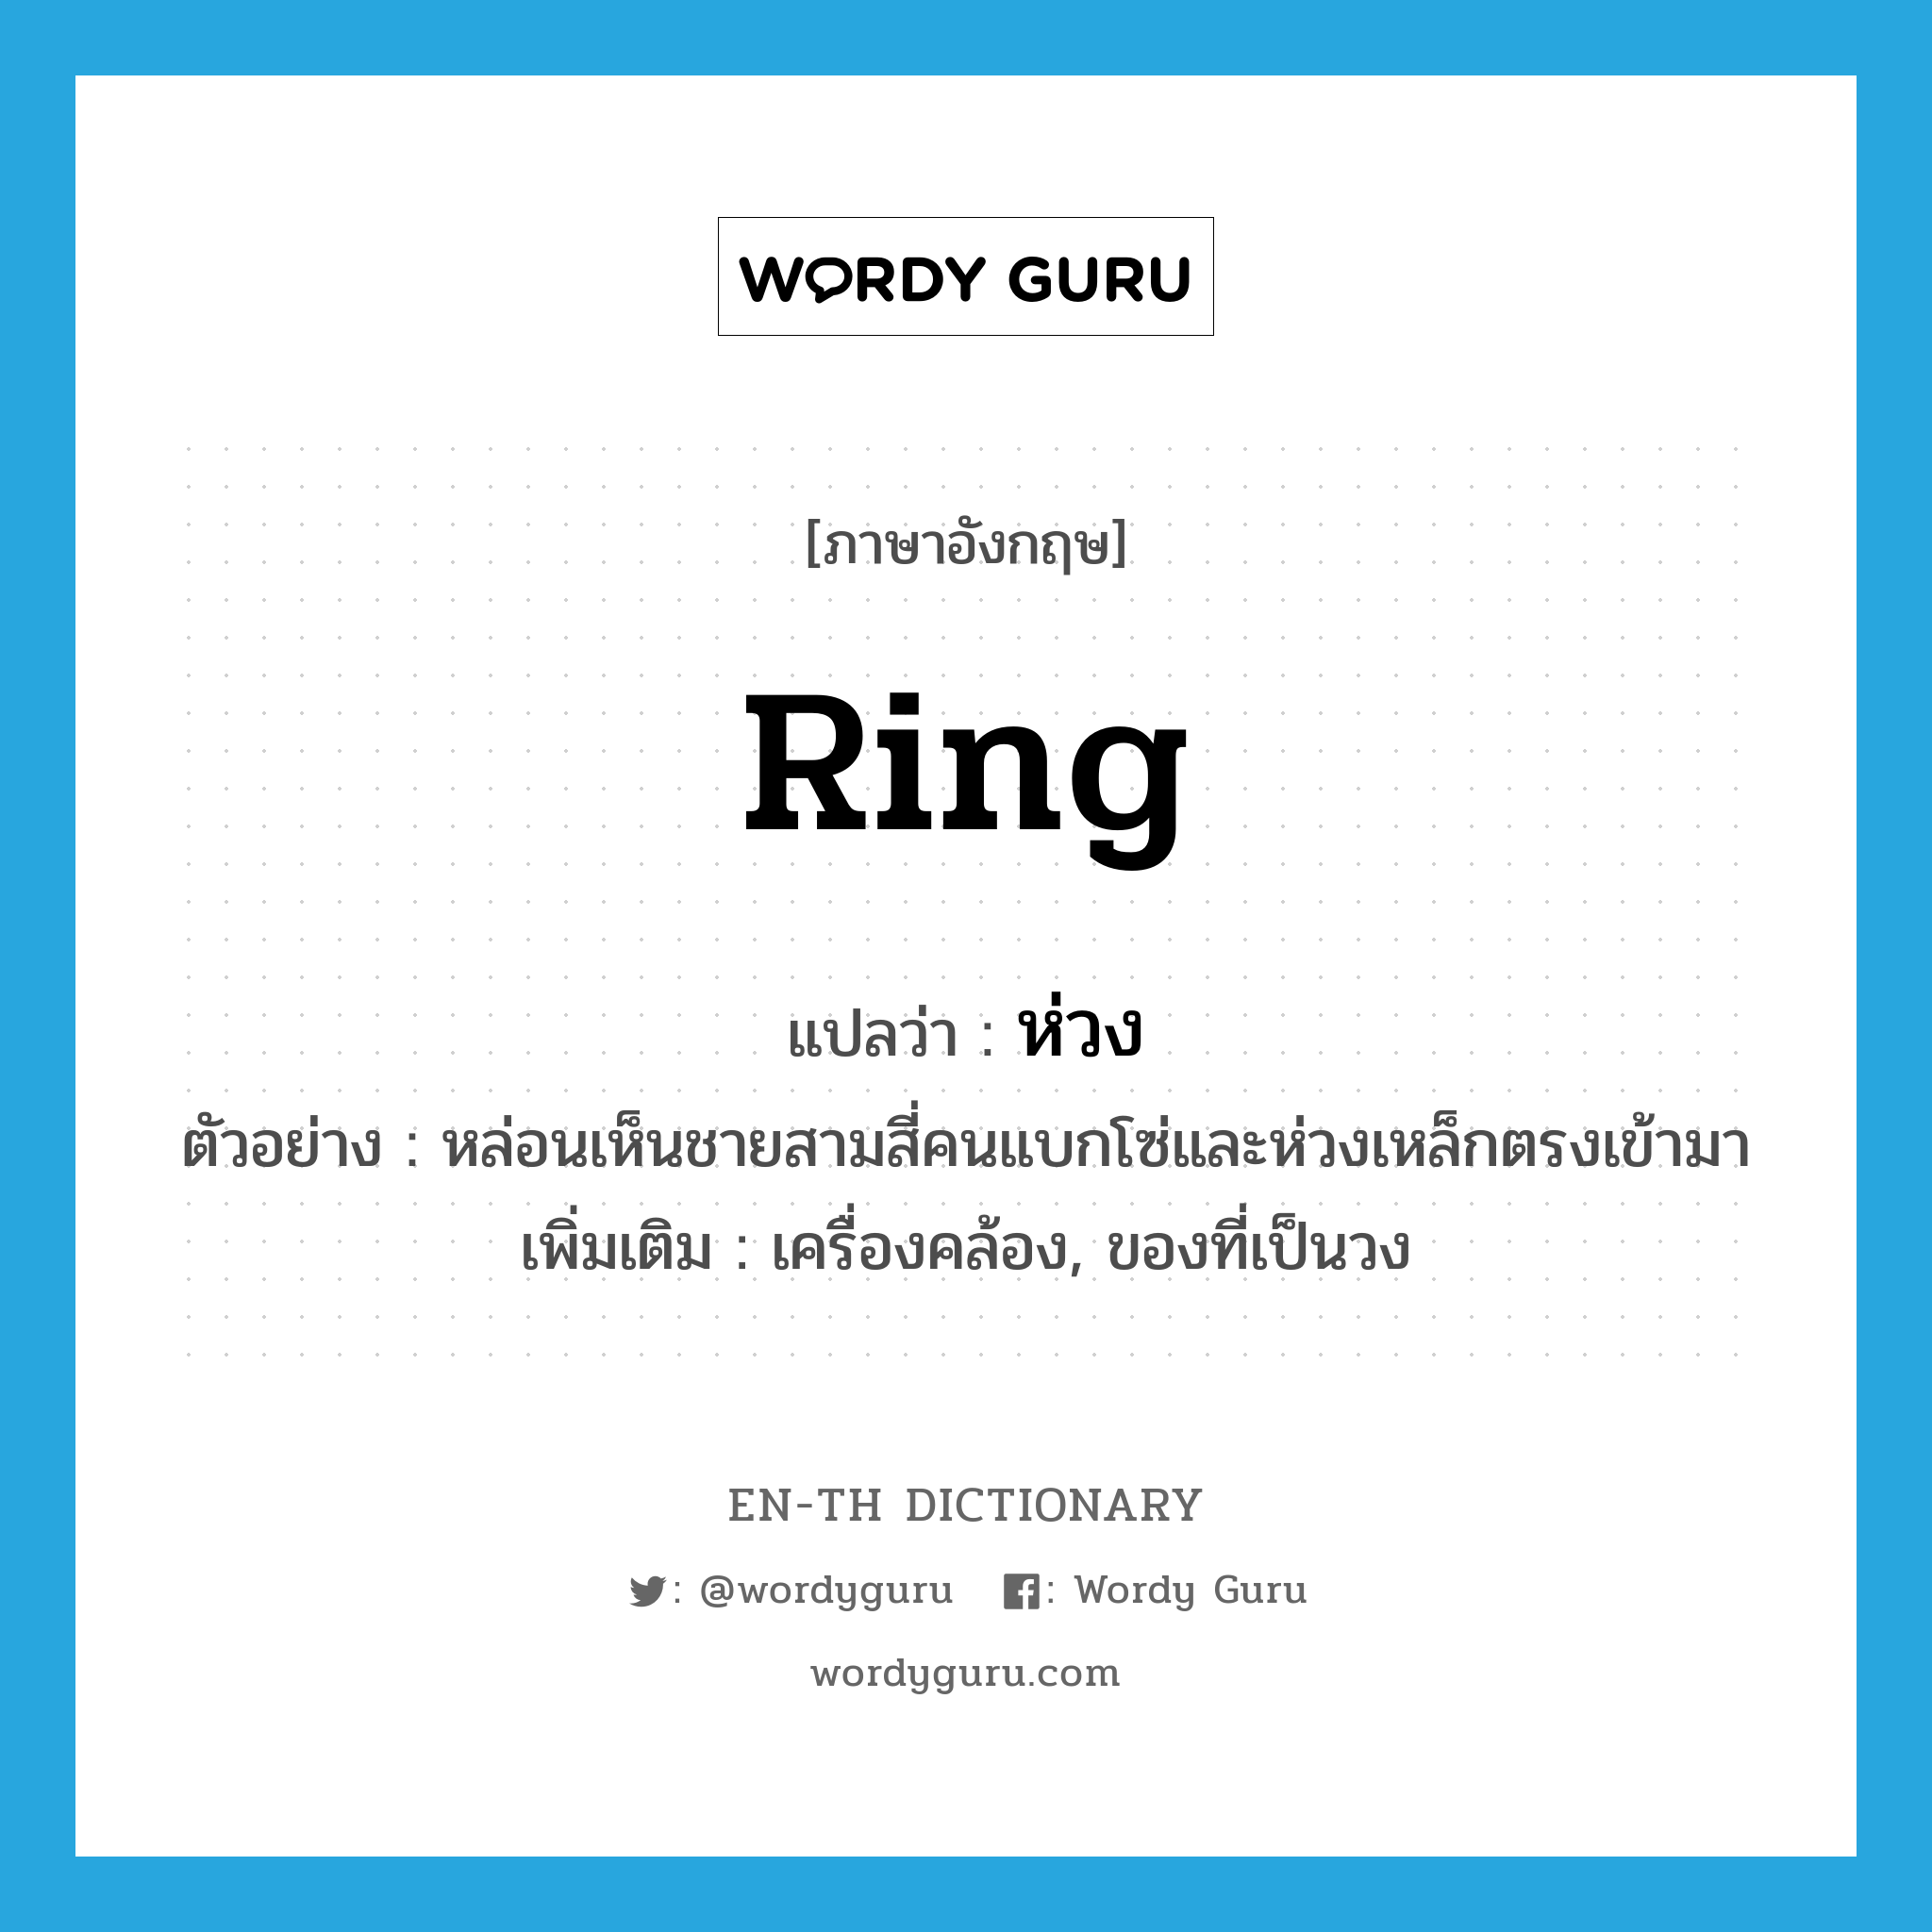 ring แปลว่า?, คำศัพท์ภาษาอังกฤษ ring แปลว่า ห่วง ประเภท N ตัวอย่าง หล่อนเห็นชายสามสี่คนแบกโซ่และห่วงเหล็กตรงเข้ามา เพิ่มเติม เครื่องคล้อง, ของที่เป็นวง หมวด N